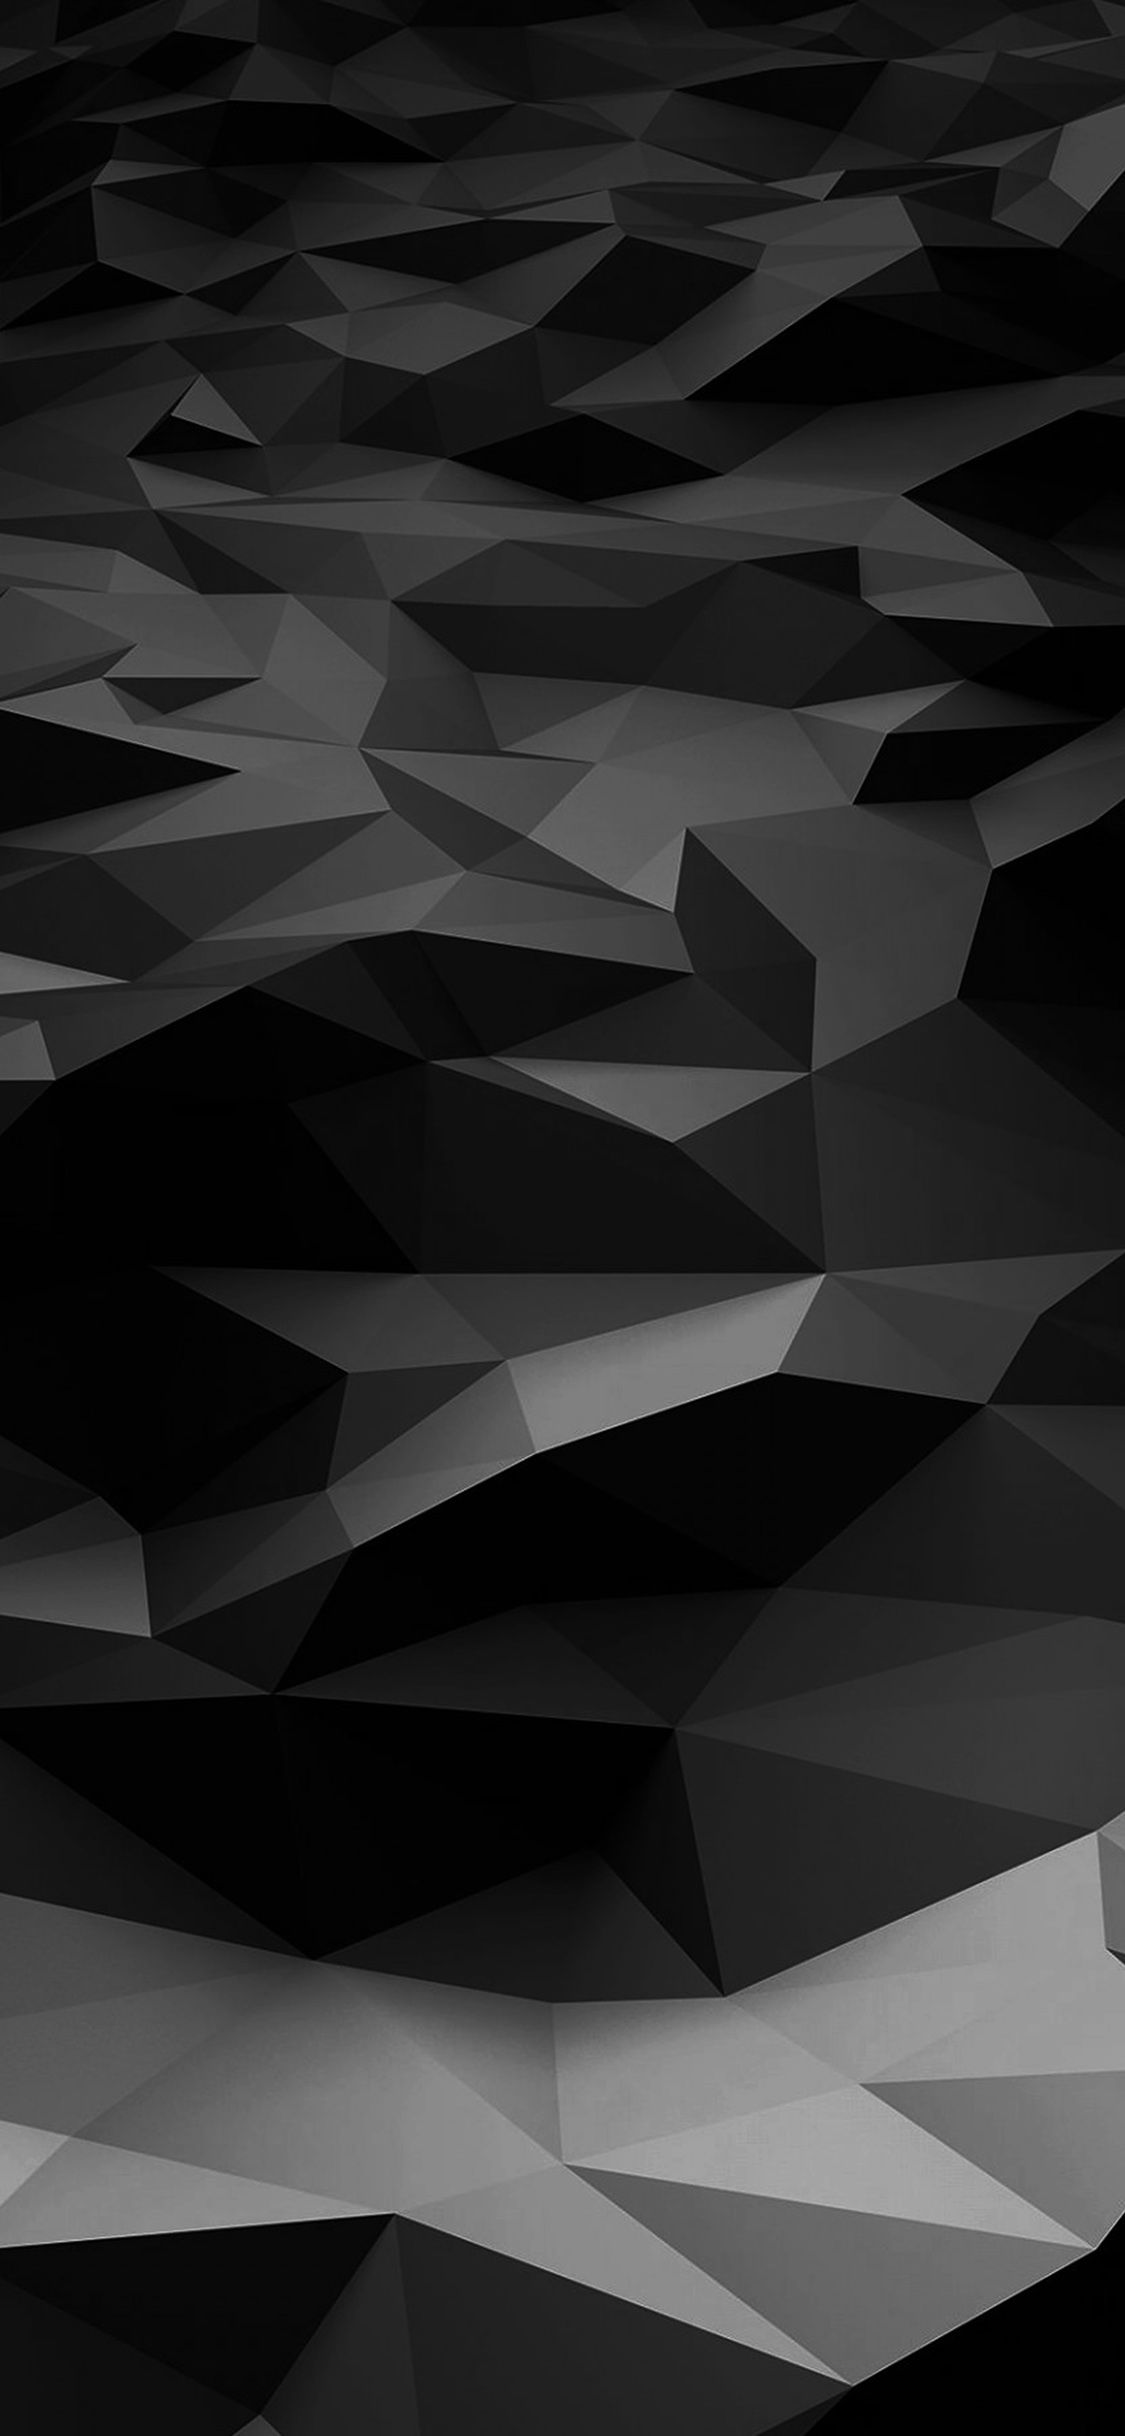 Dark iPhone X Wallpapers - Wallpaper Cave